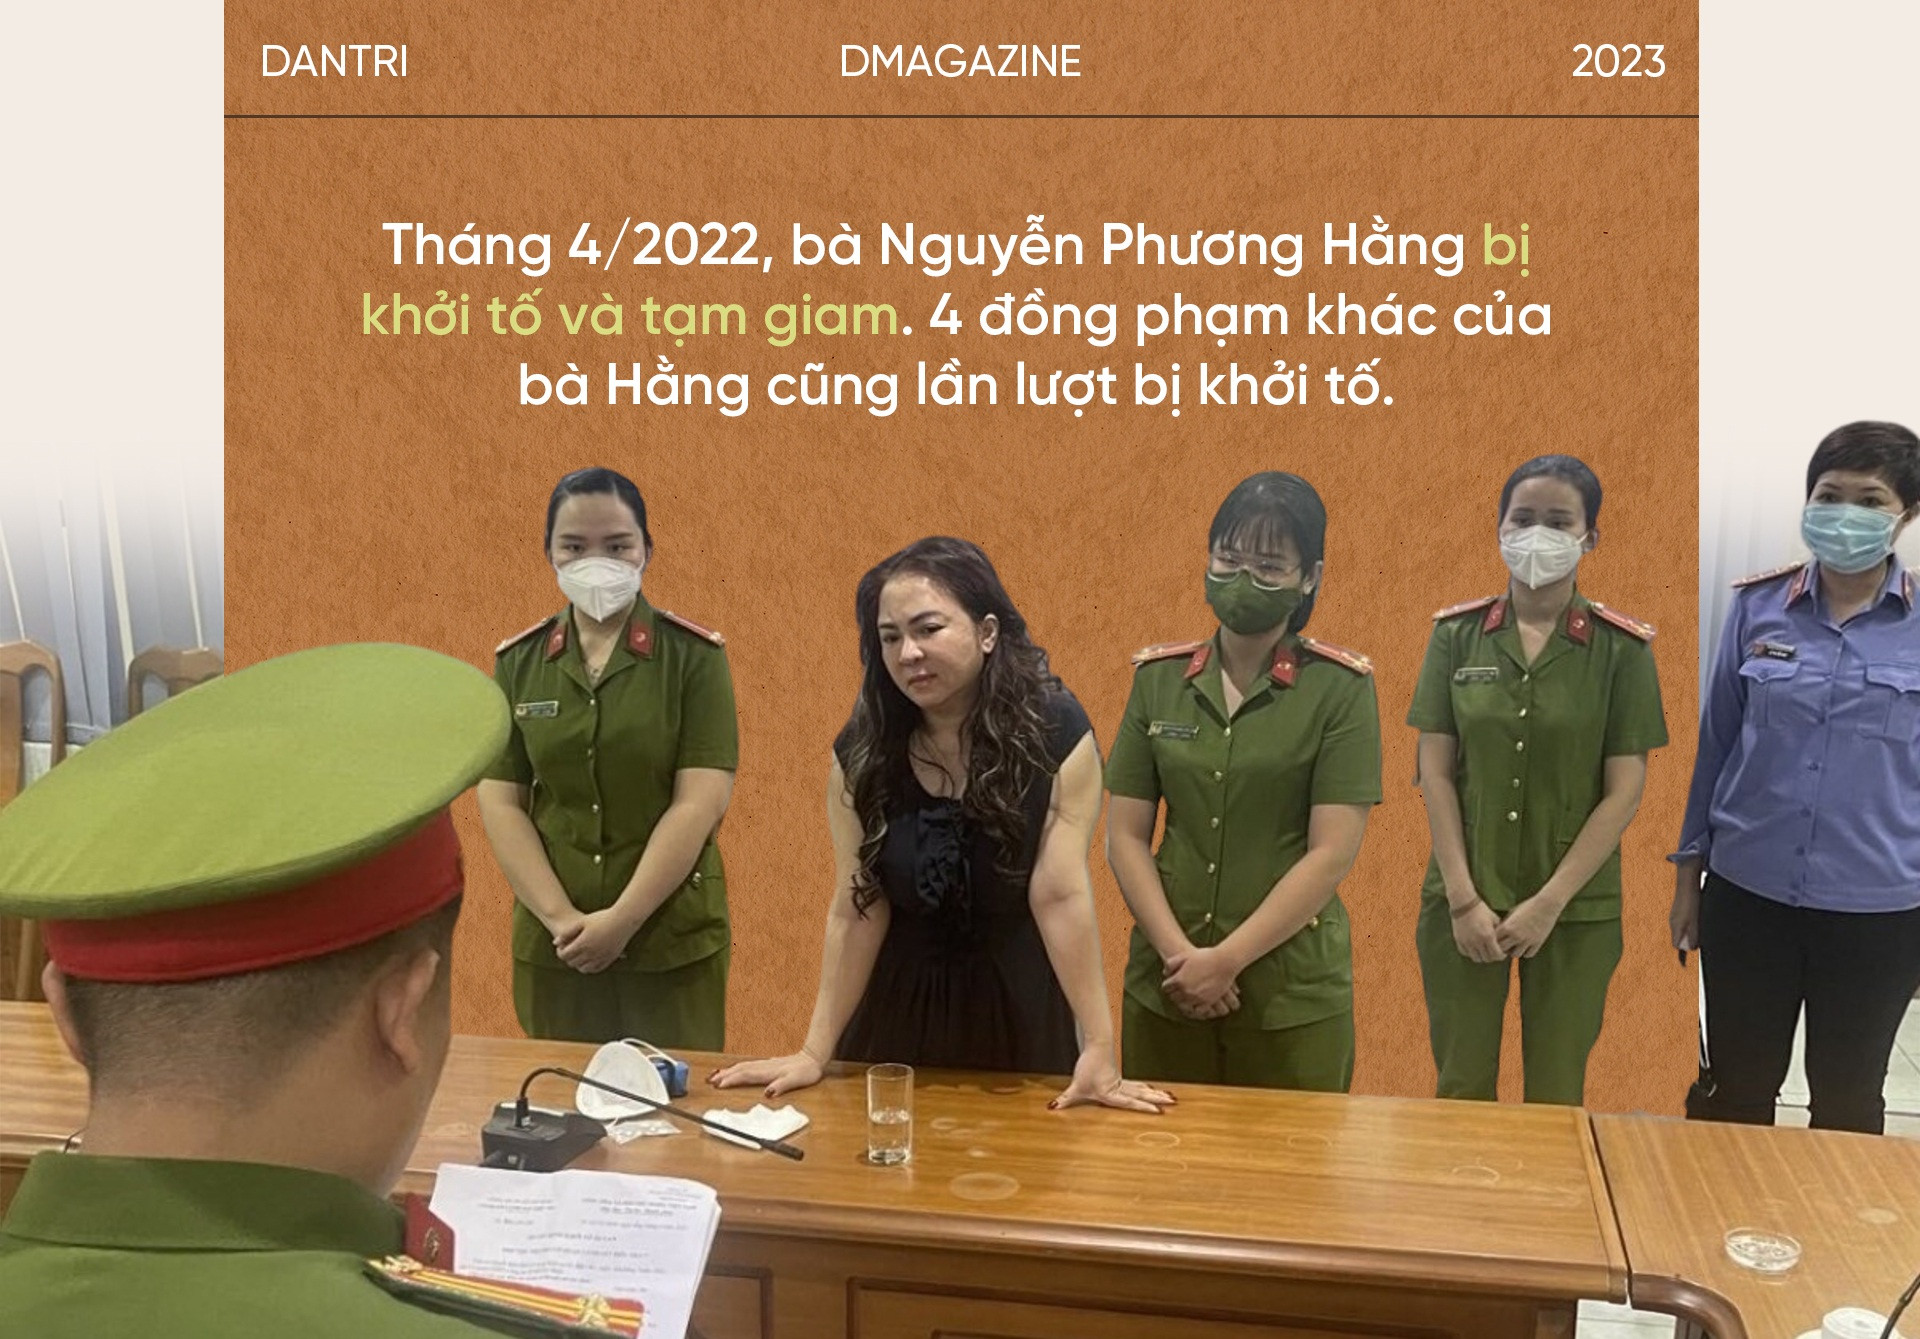 Một năm khuấy đảo MXH tới ngày vướng lao lý của bà Nguyễn Phương Hằng - 15